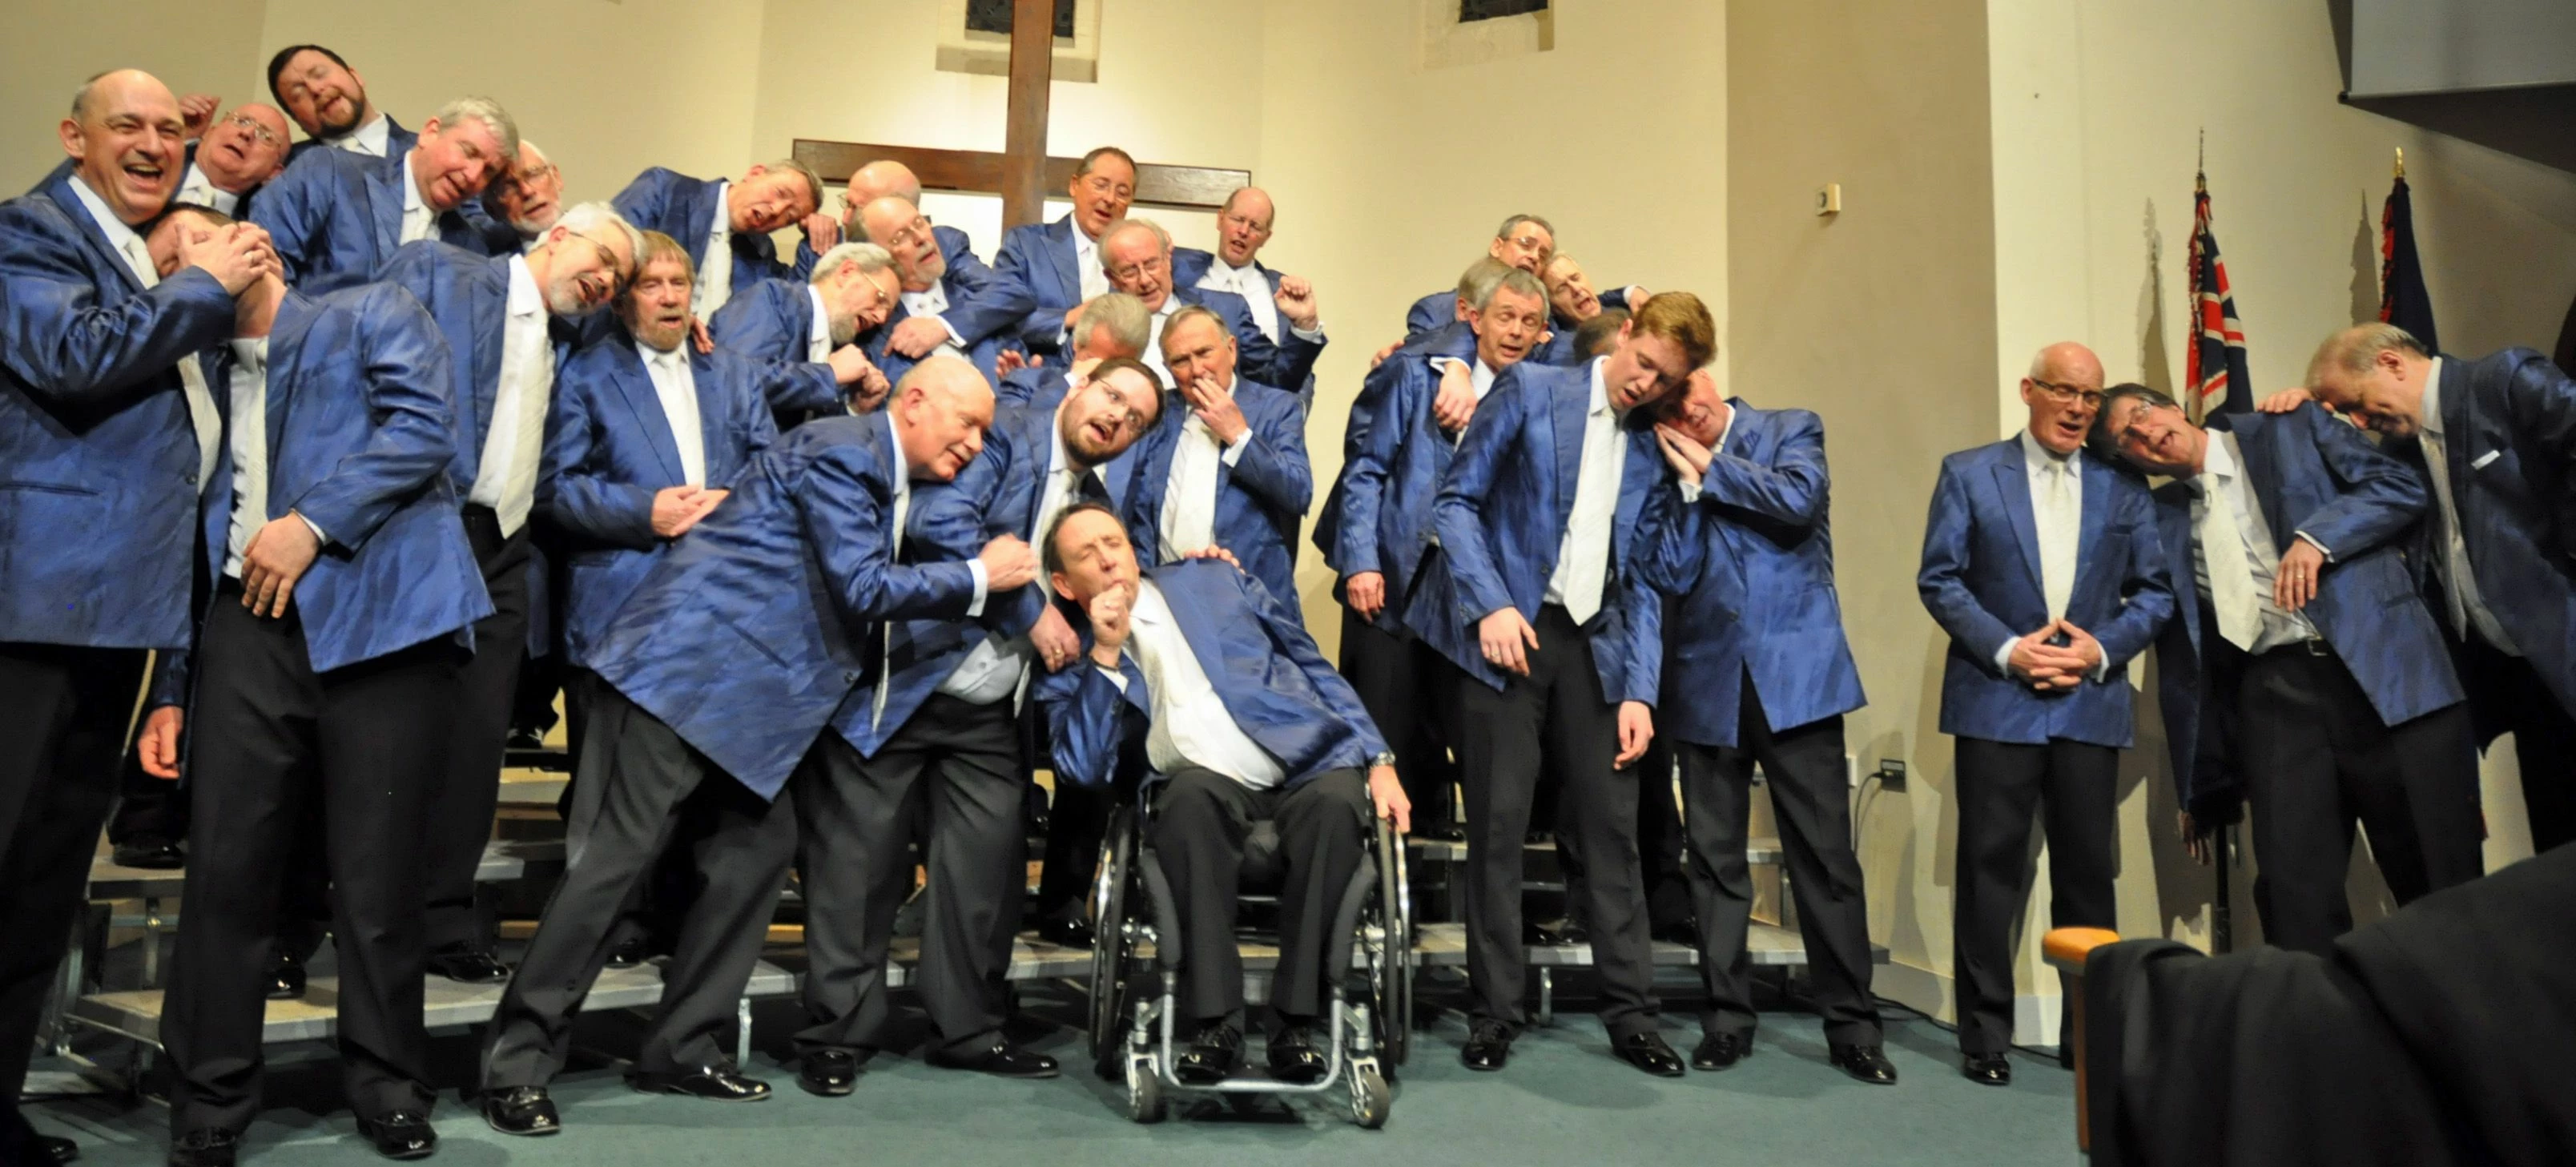 Choir practice - No Limits